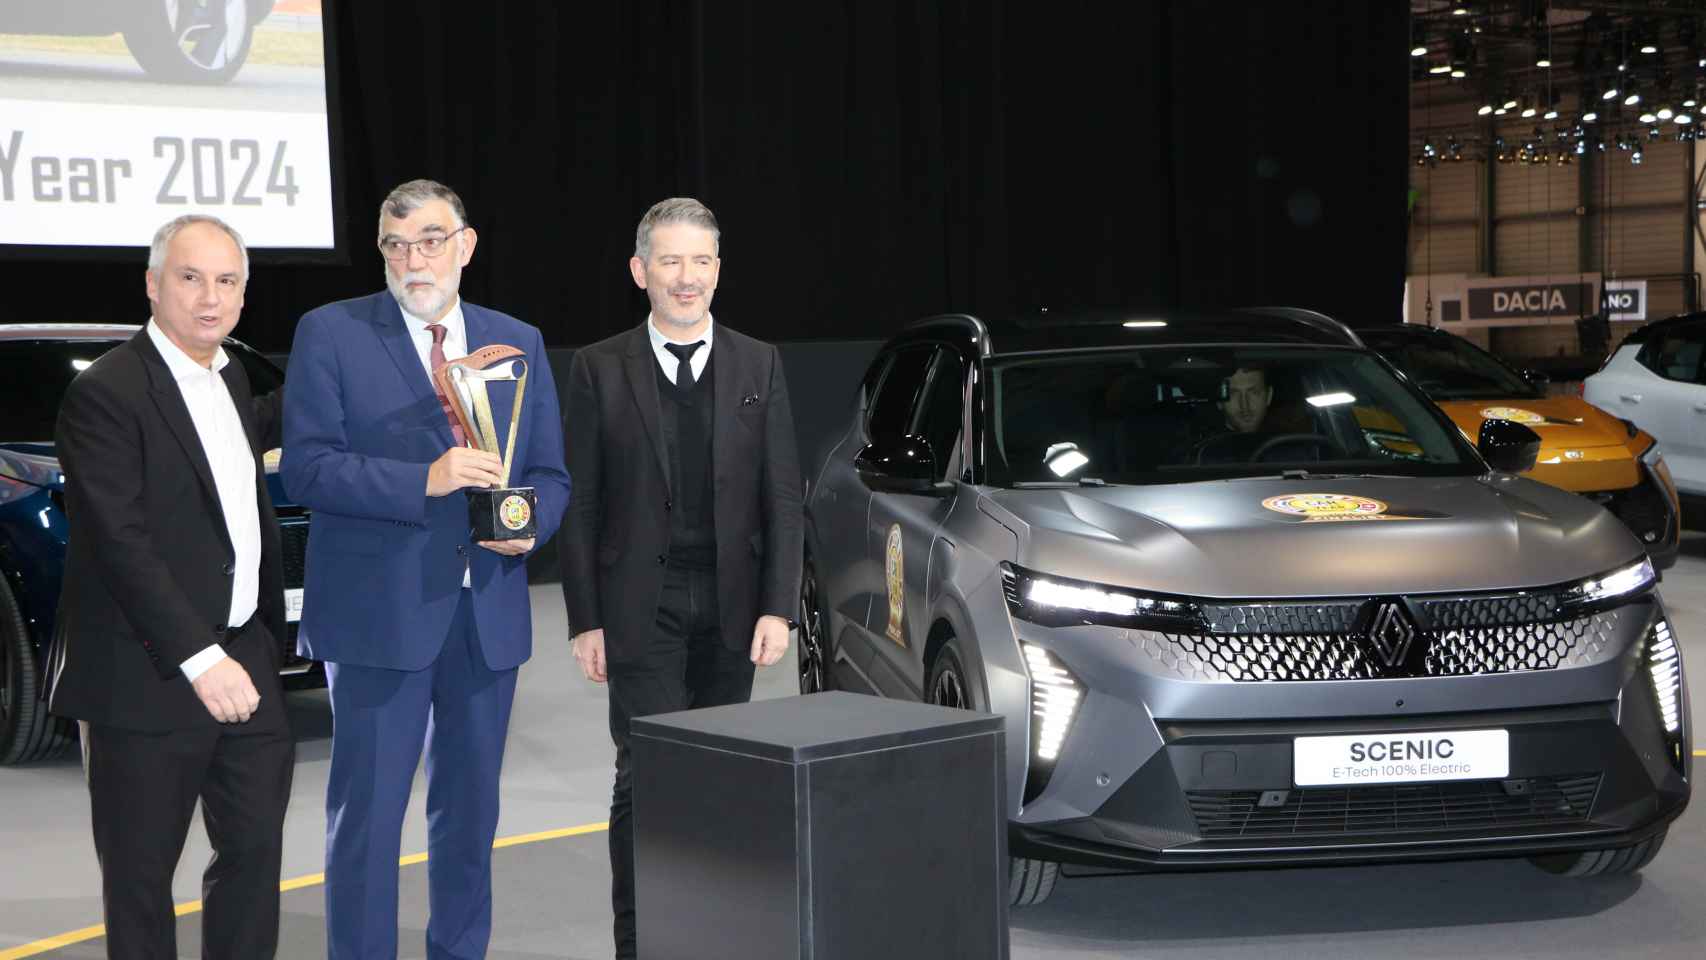 Momento de la recogida del premio por parte de los directivos de Renault.